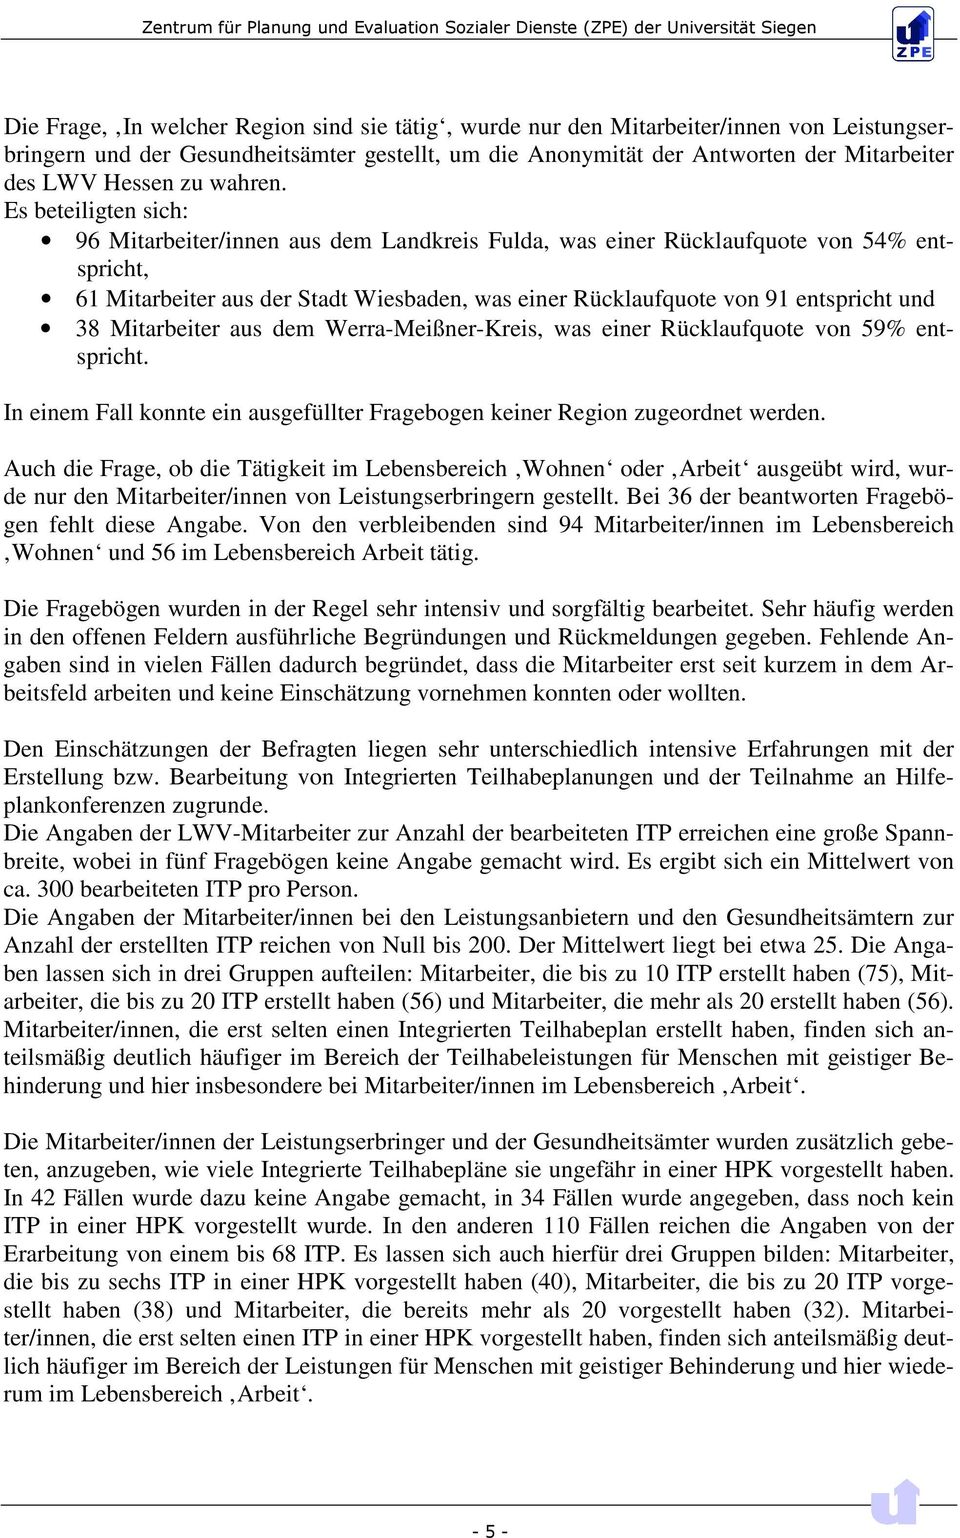 Es beteiligten sich: 96 Mitarbeiter/innen aus dem Landkreis Fulda, was einer Rücklaufquote von 54% entspricht, 61 Mitarbeiter aus der Stadt Wiesbaden, was einer Rücklaufquote von 91 entspricht und 38